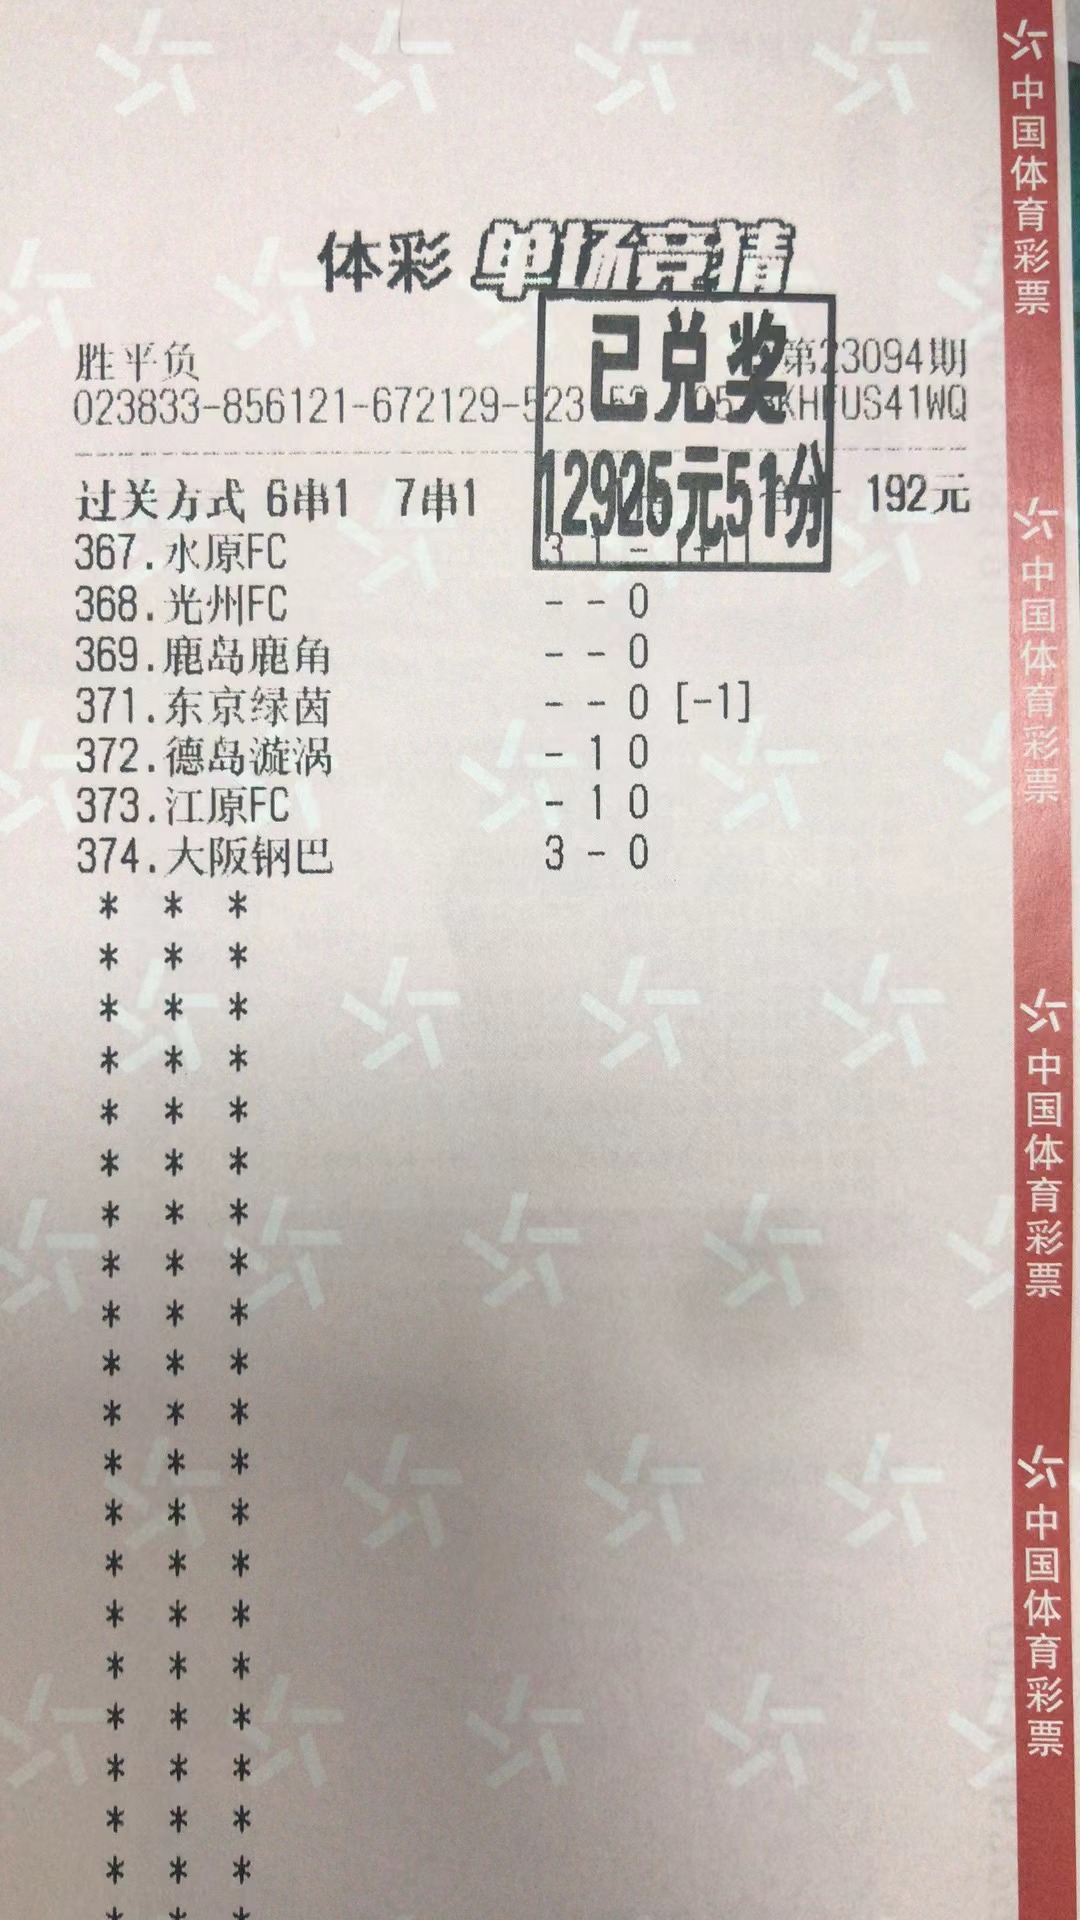 9月25日北单胜平负收米12925元-北单实体店